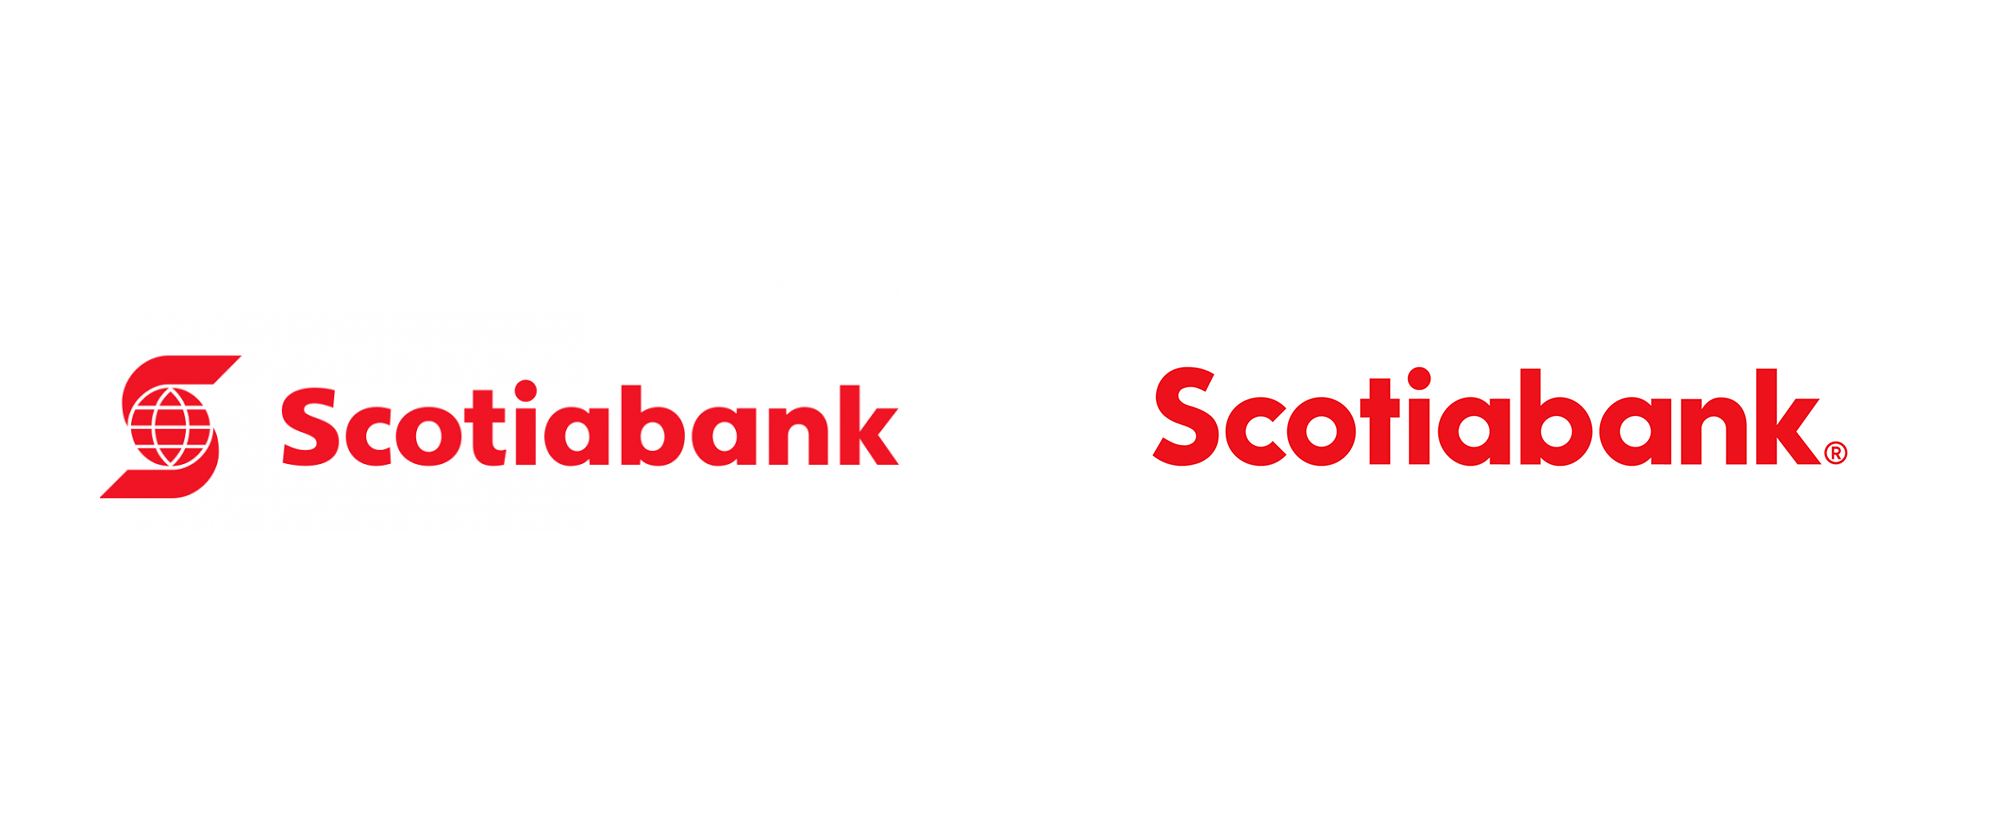 https://0901.nccdn.net/4_2/000/000/017/e75/scotiabank_logo_before_after-2000x832.png